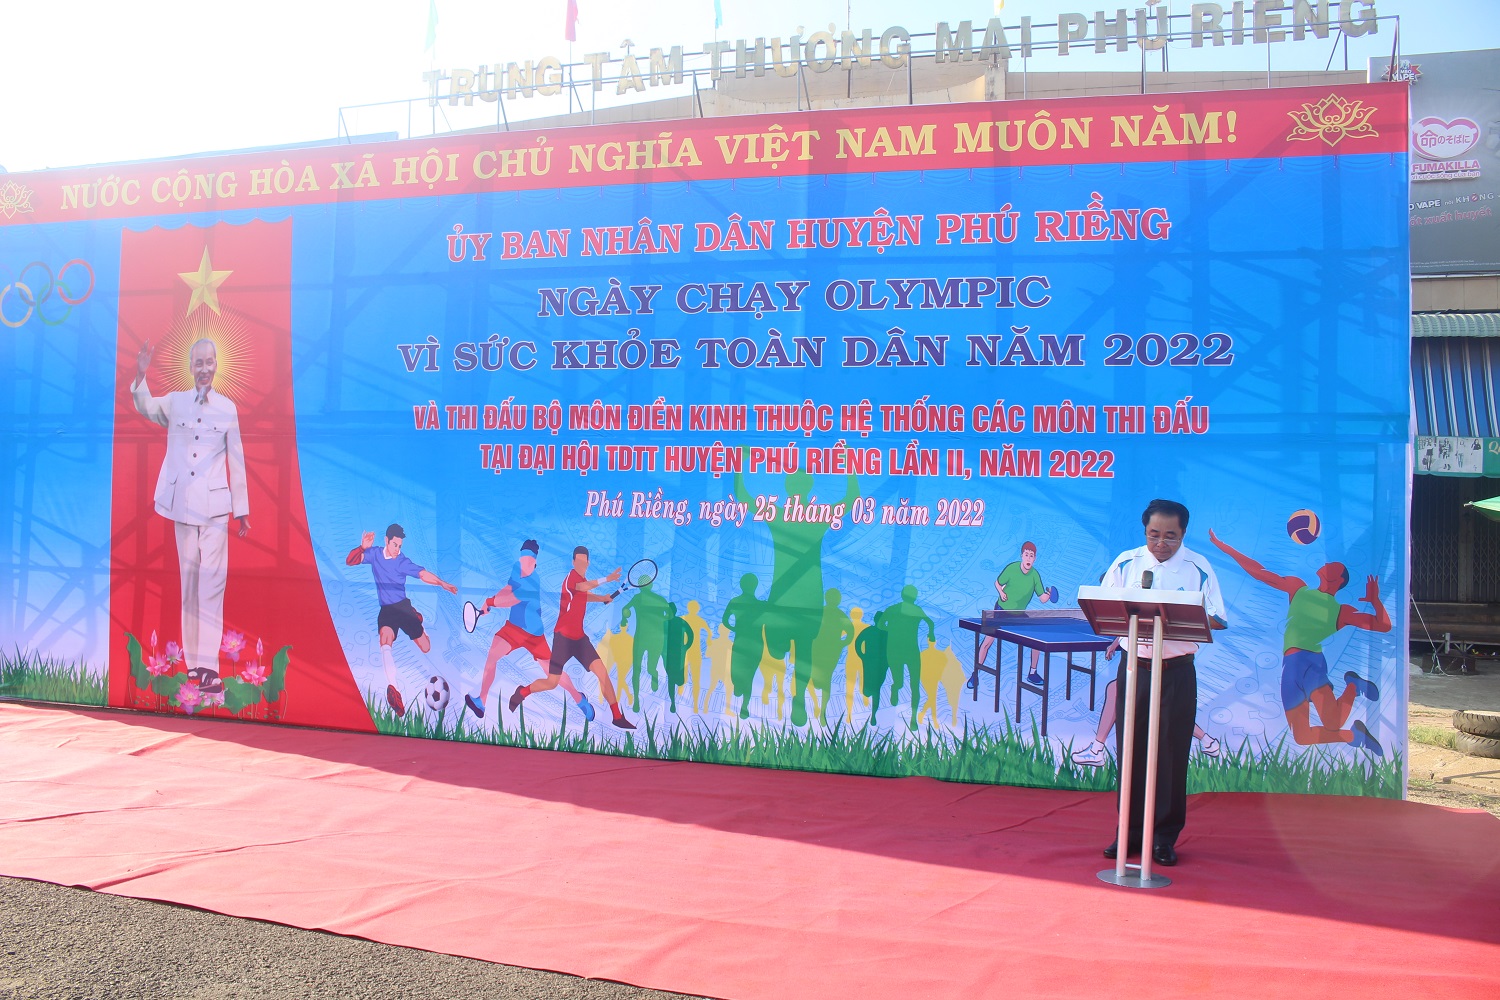 UV BTV, Phó Chủ tịch UBND huyện Phú Riềng, Bùi Văn Hiếu phát động ngày chạy Olympic năm 2022.